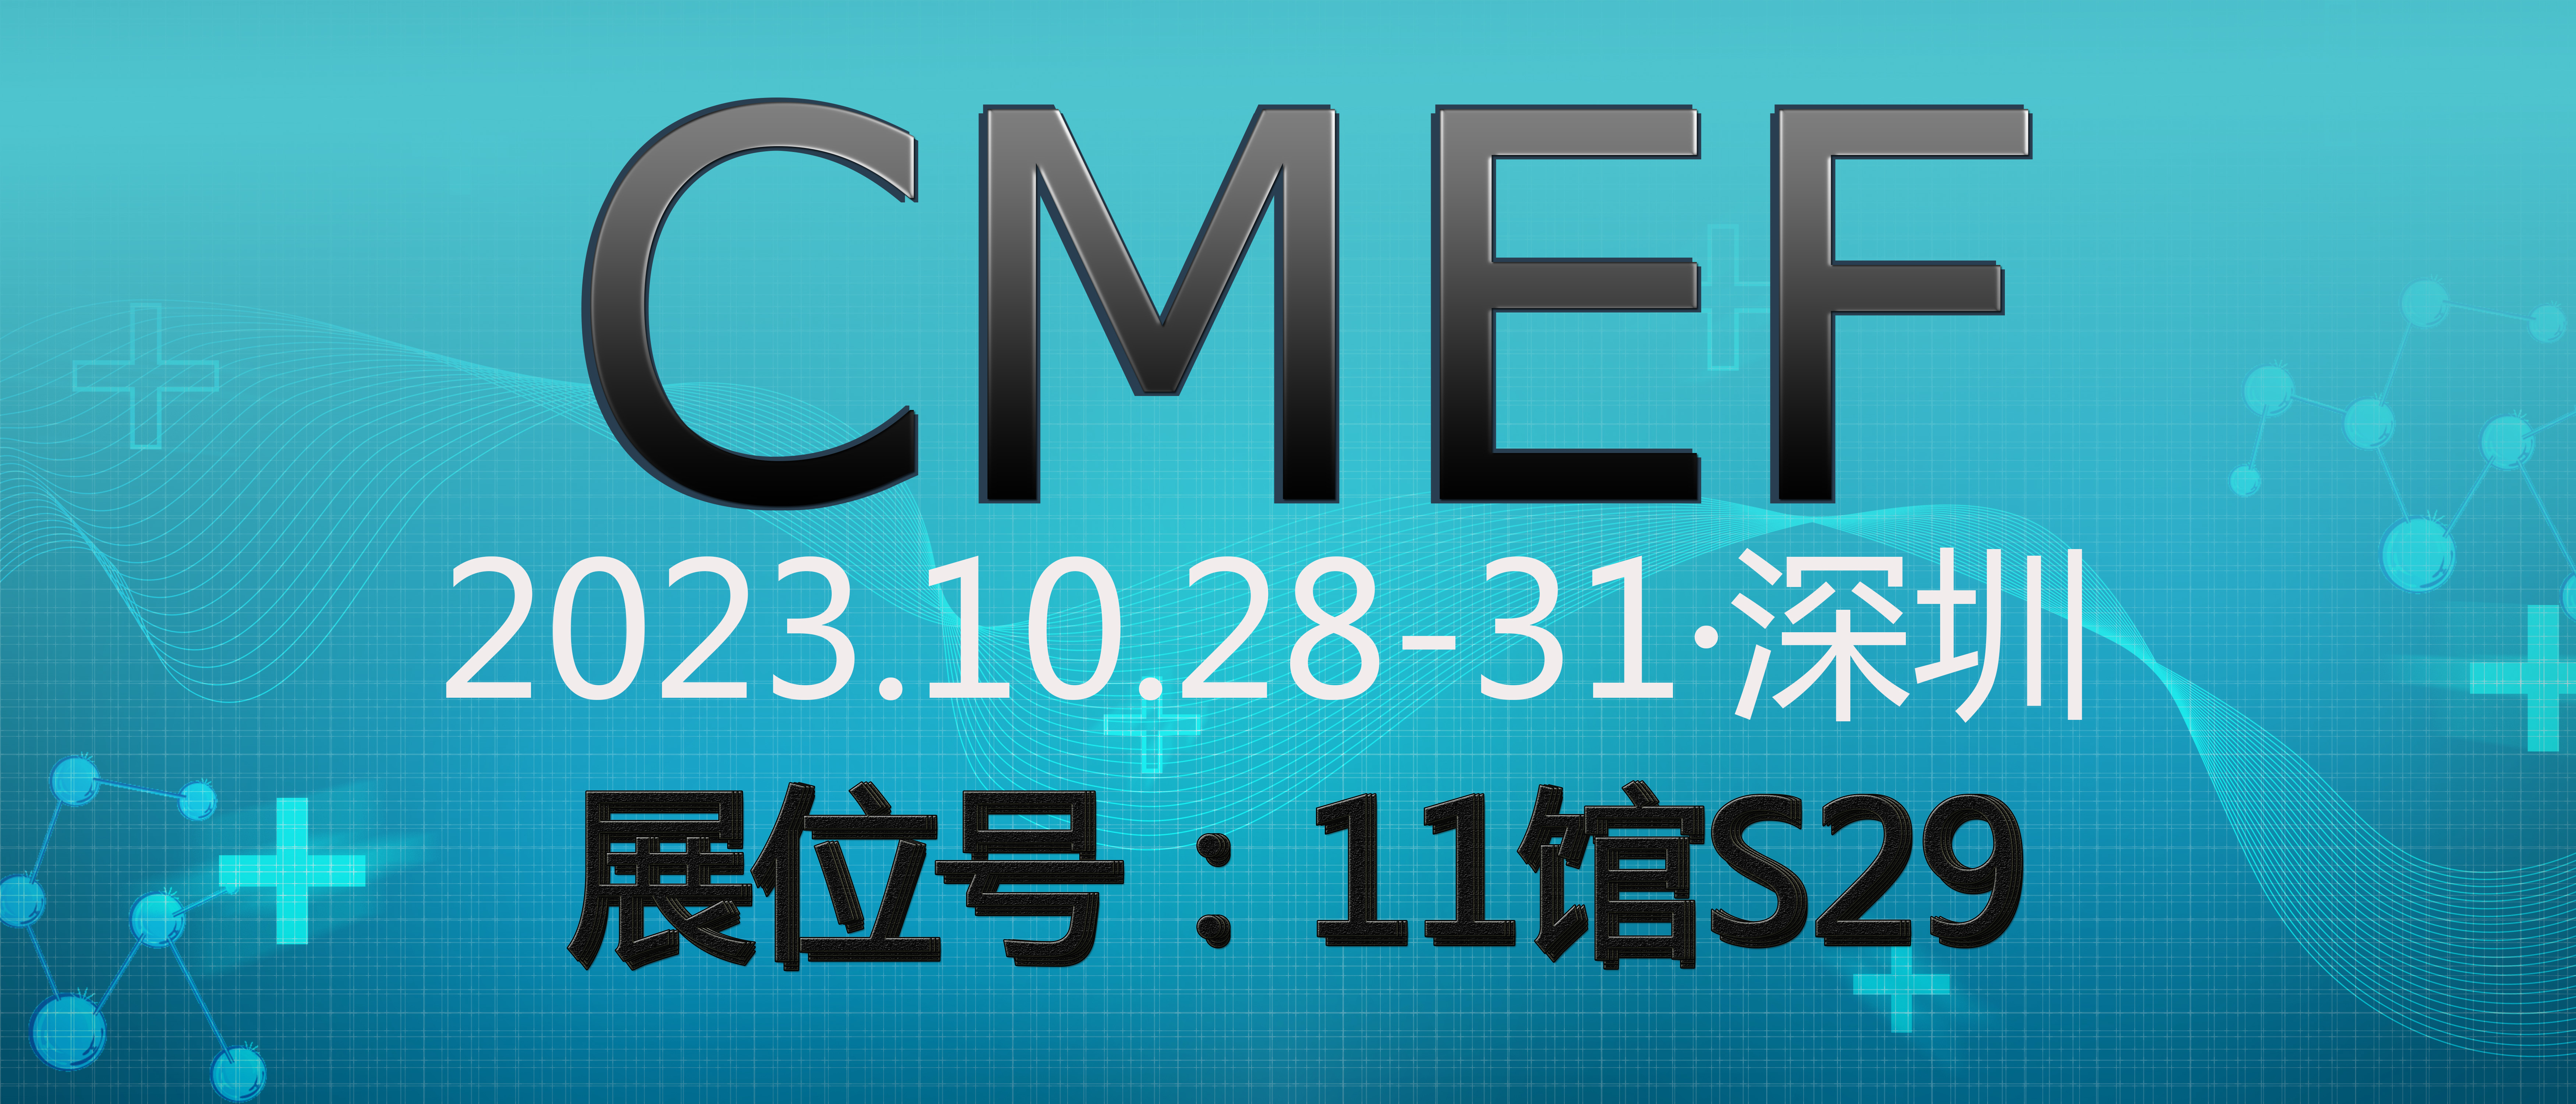 深圳国际医疗器械博览会